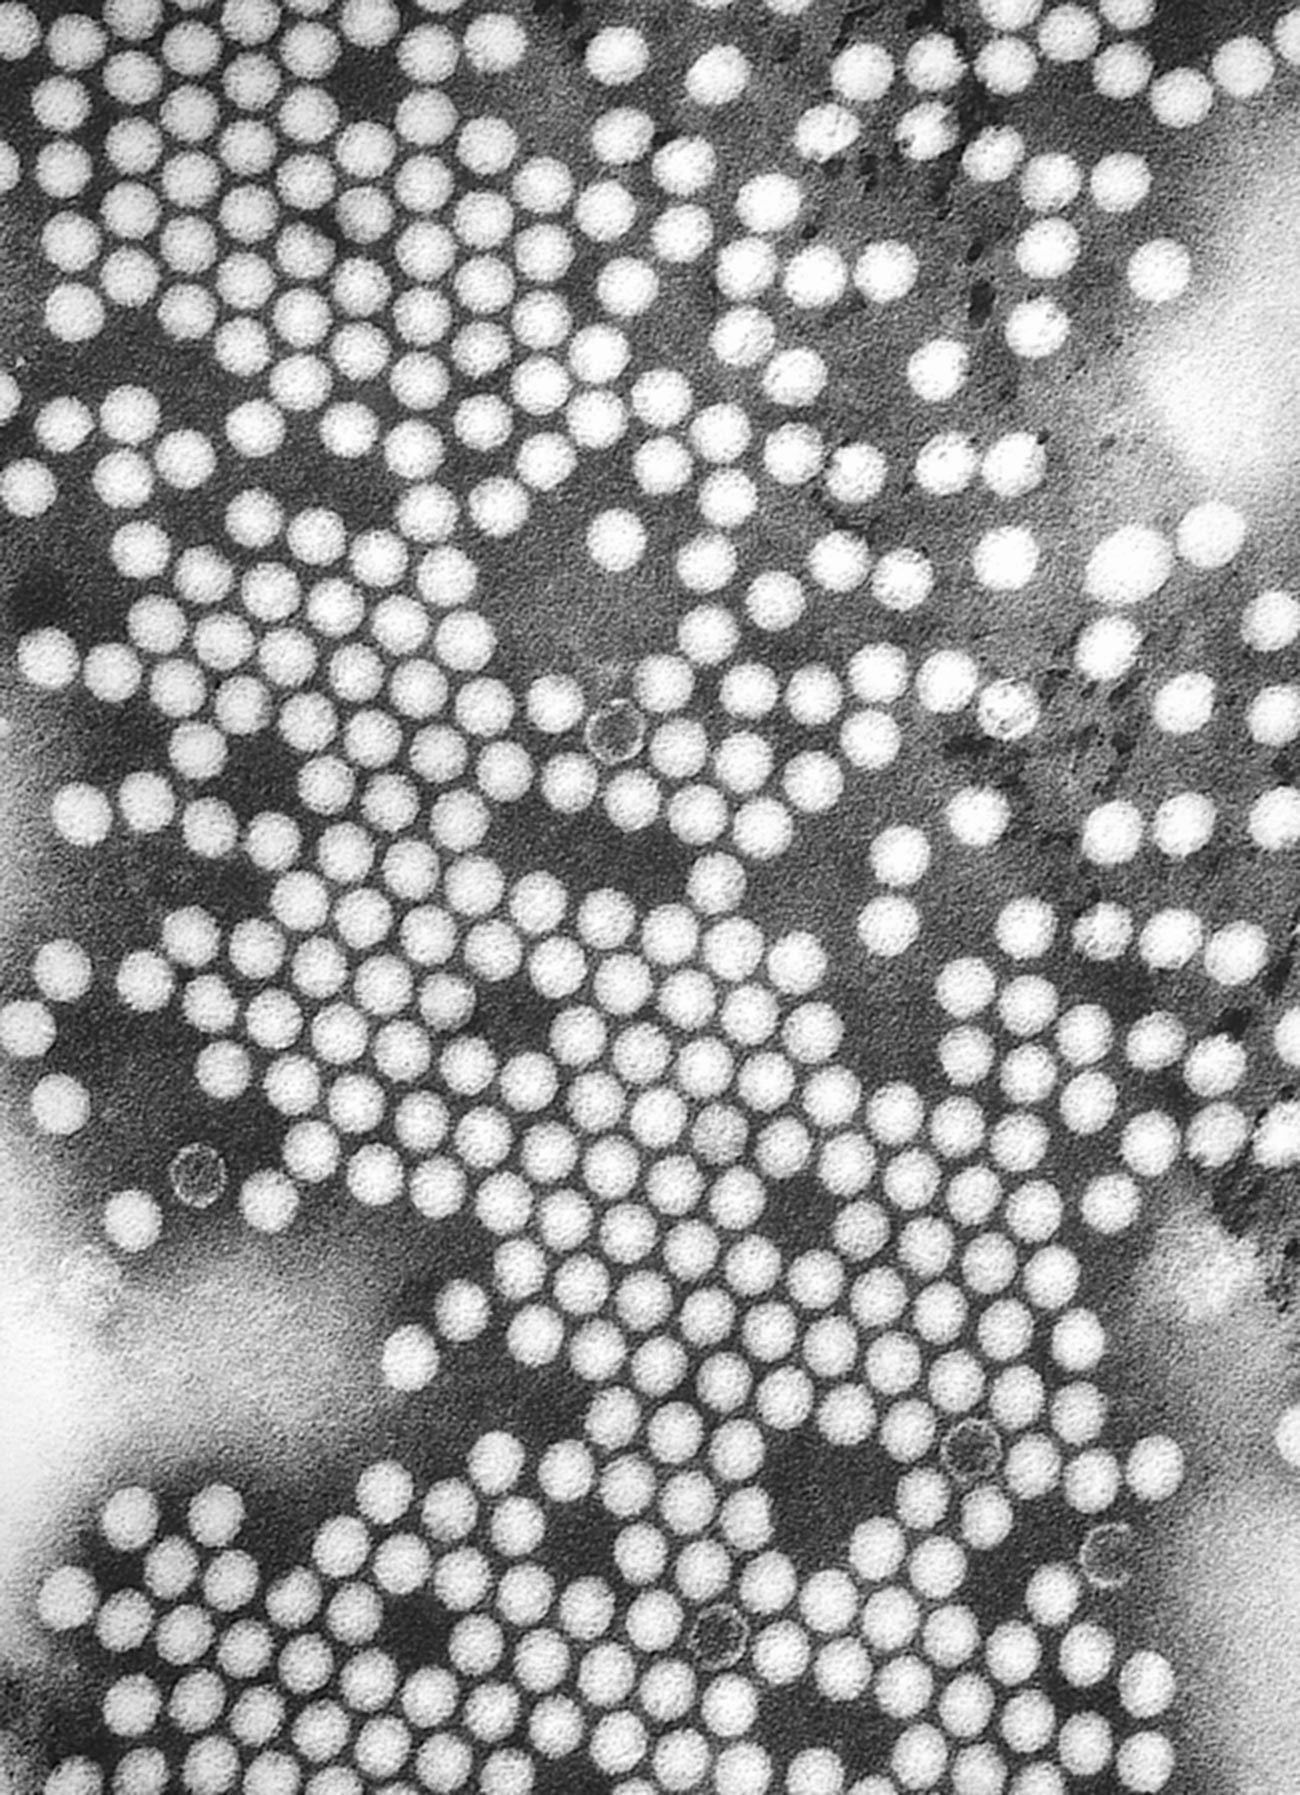 ポリオウイルスの顕微鏡像